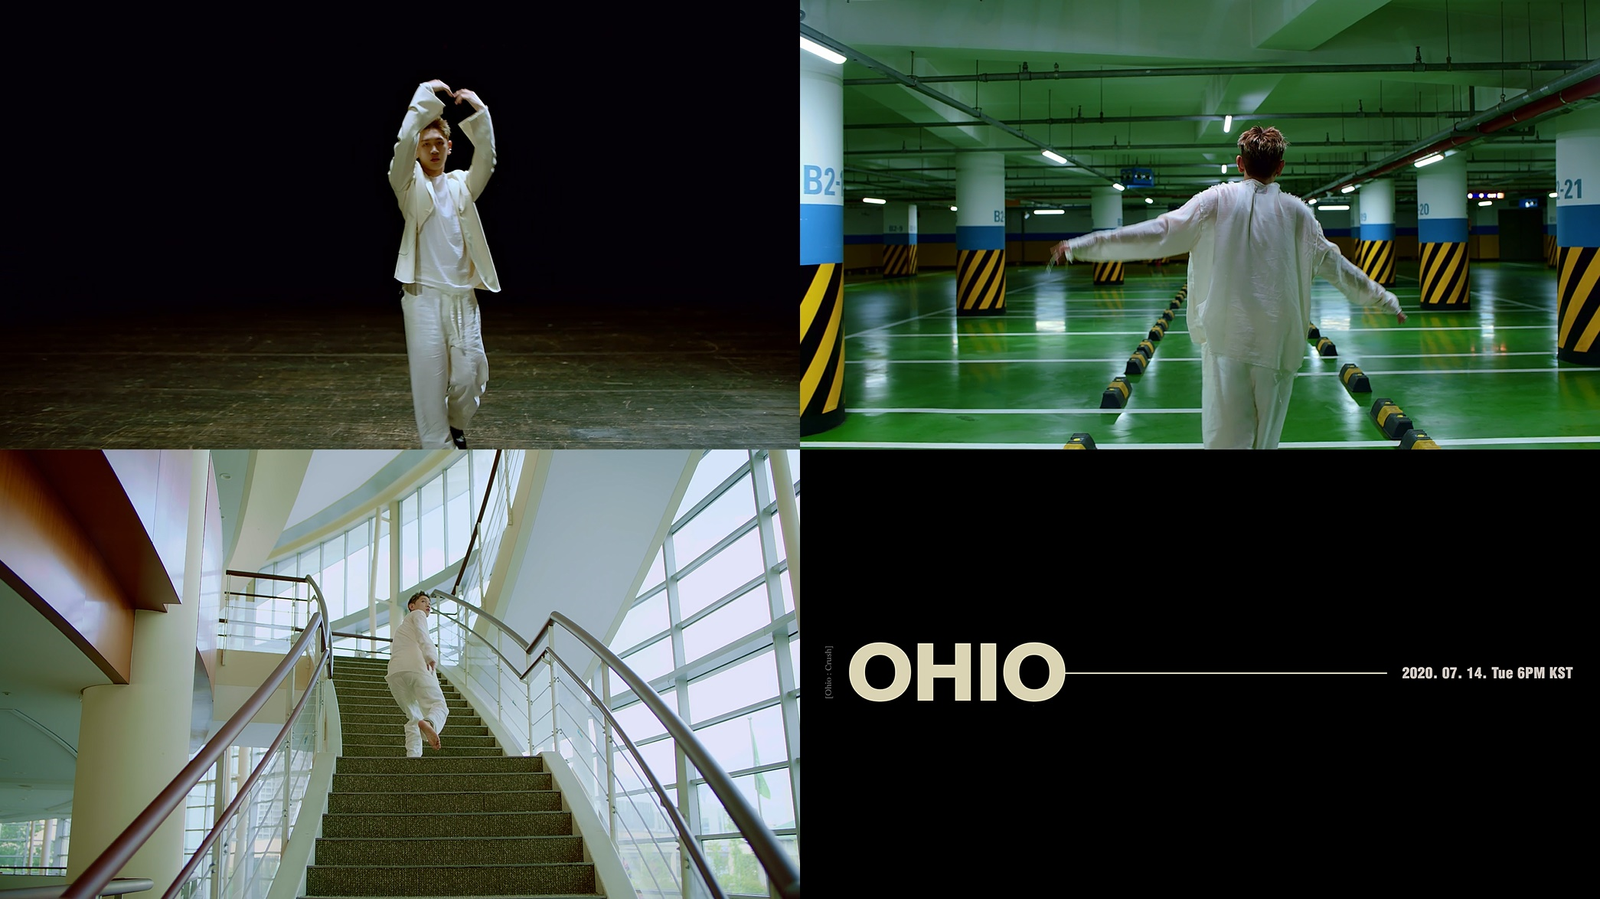 Crush, New Single 'OHIO' M/V Teaser Video Released on July 13